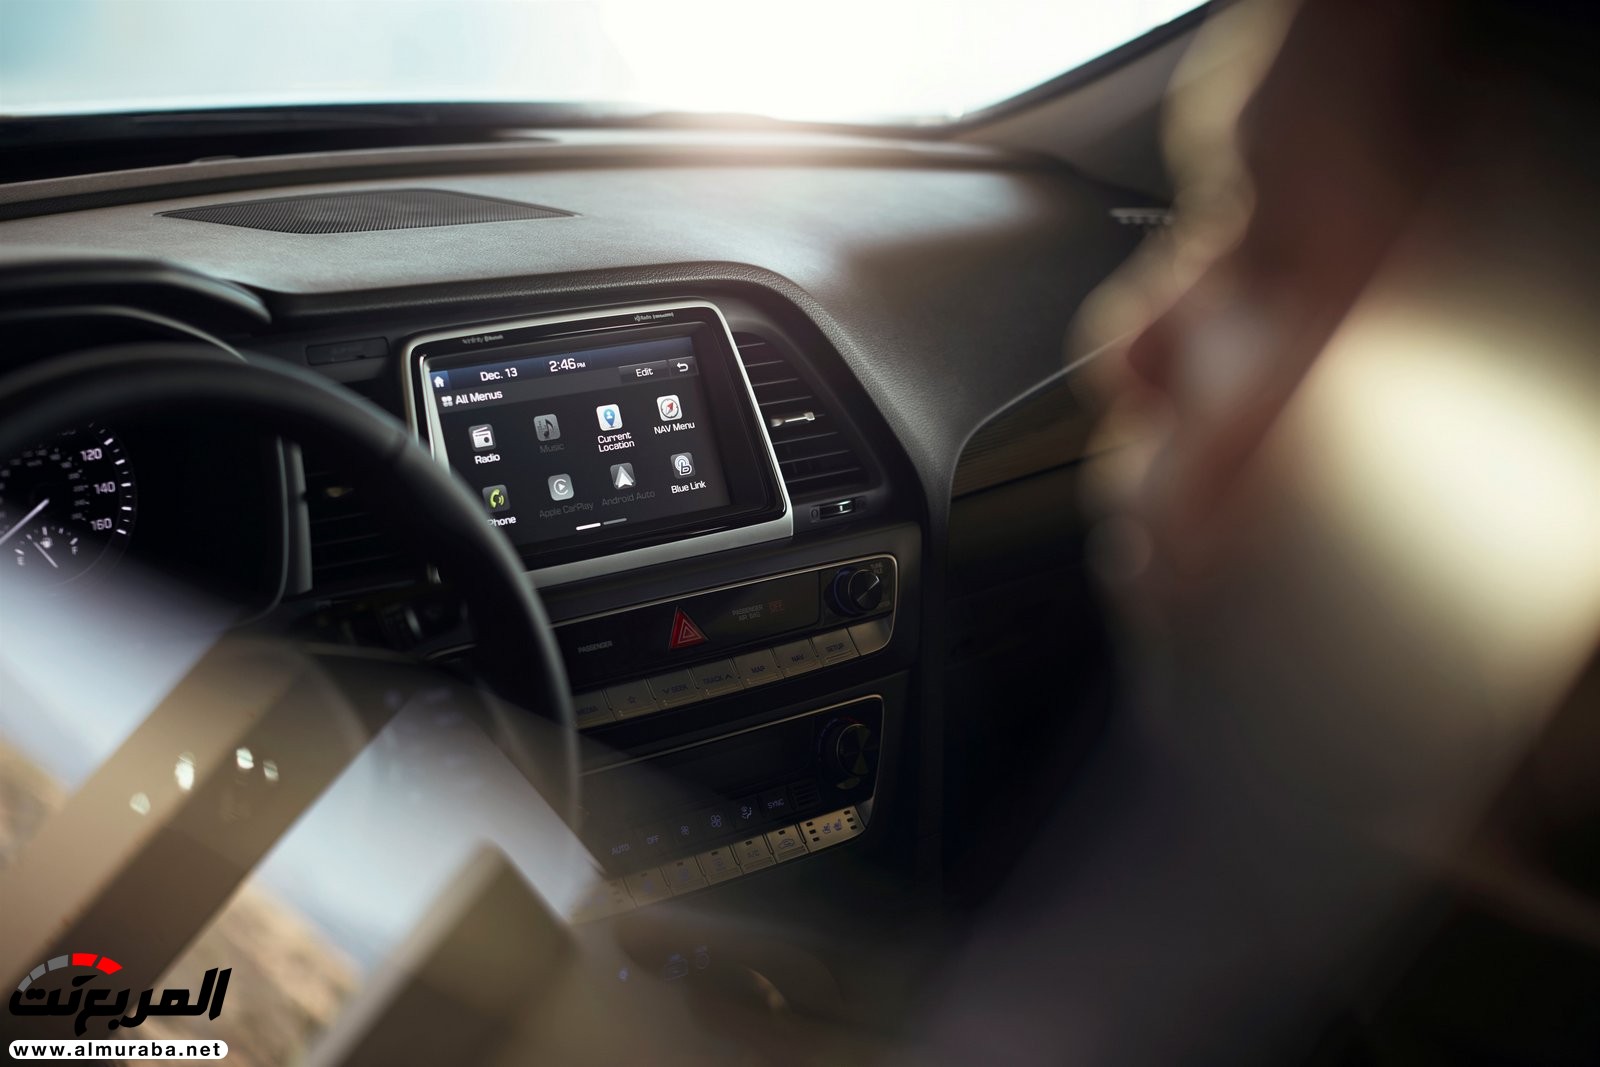 هيونداي سوناتا 2018 المحدثة تحصل على تحديثات خارجية وداخلية "صور وفيديو واسعار" Hyundai Sonata 109